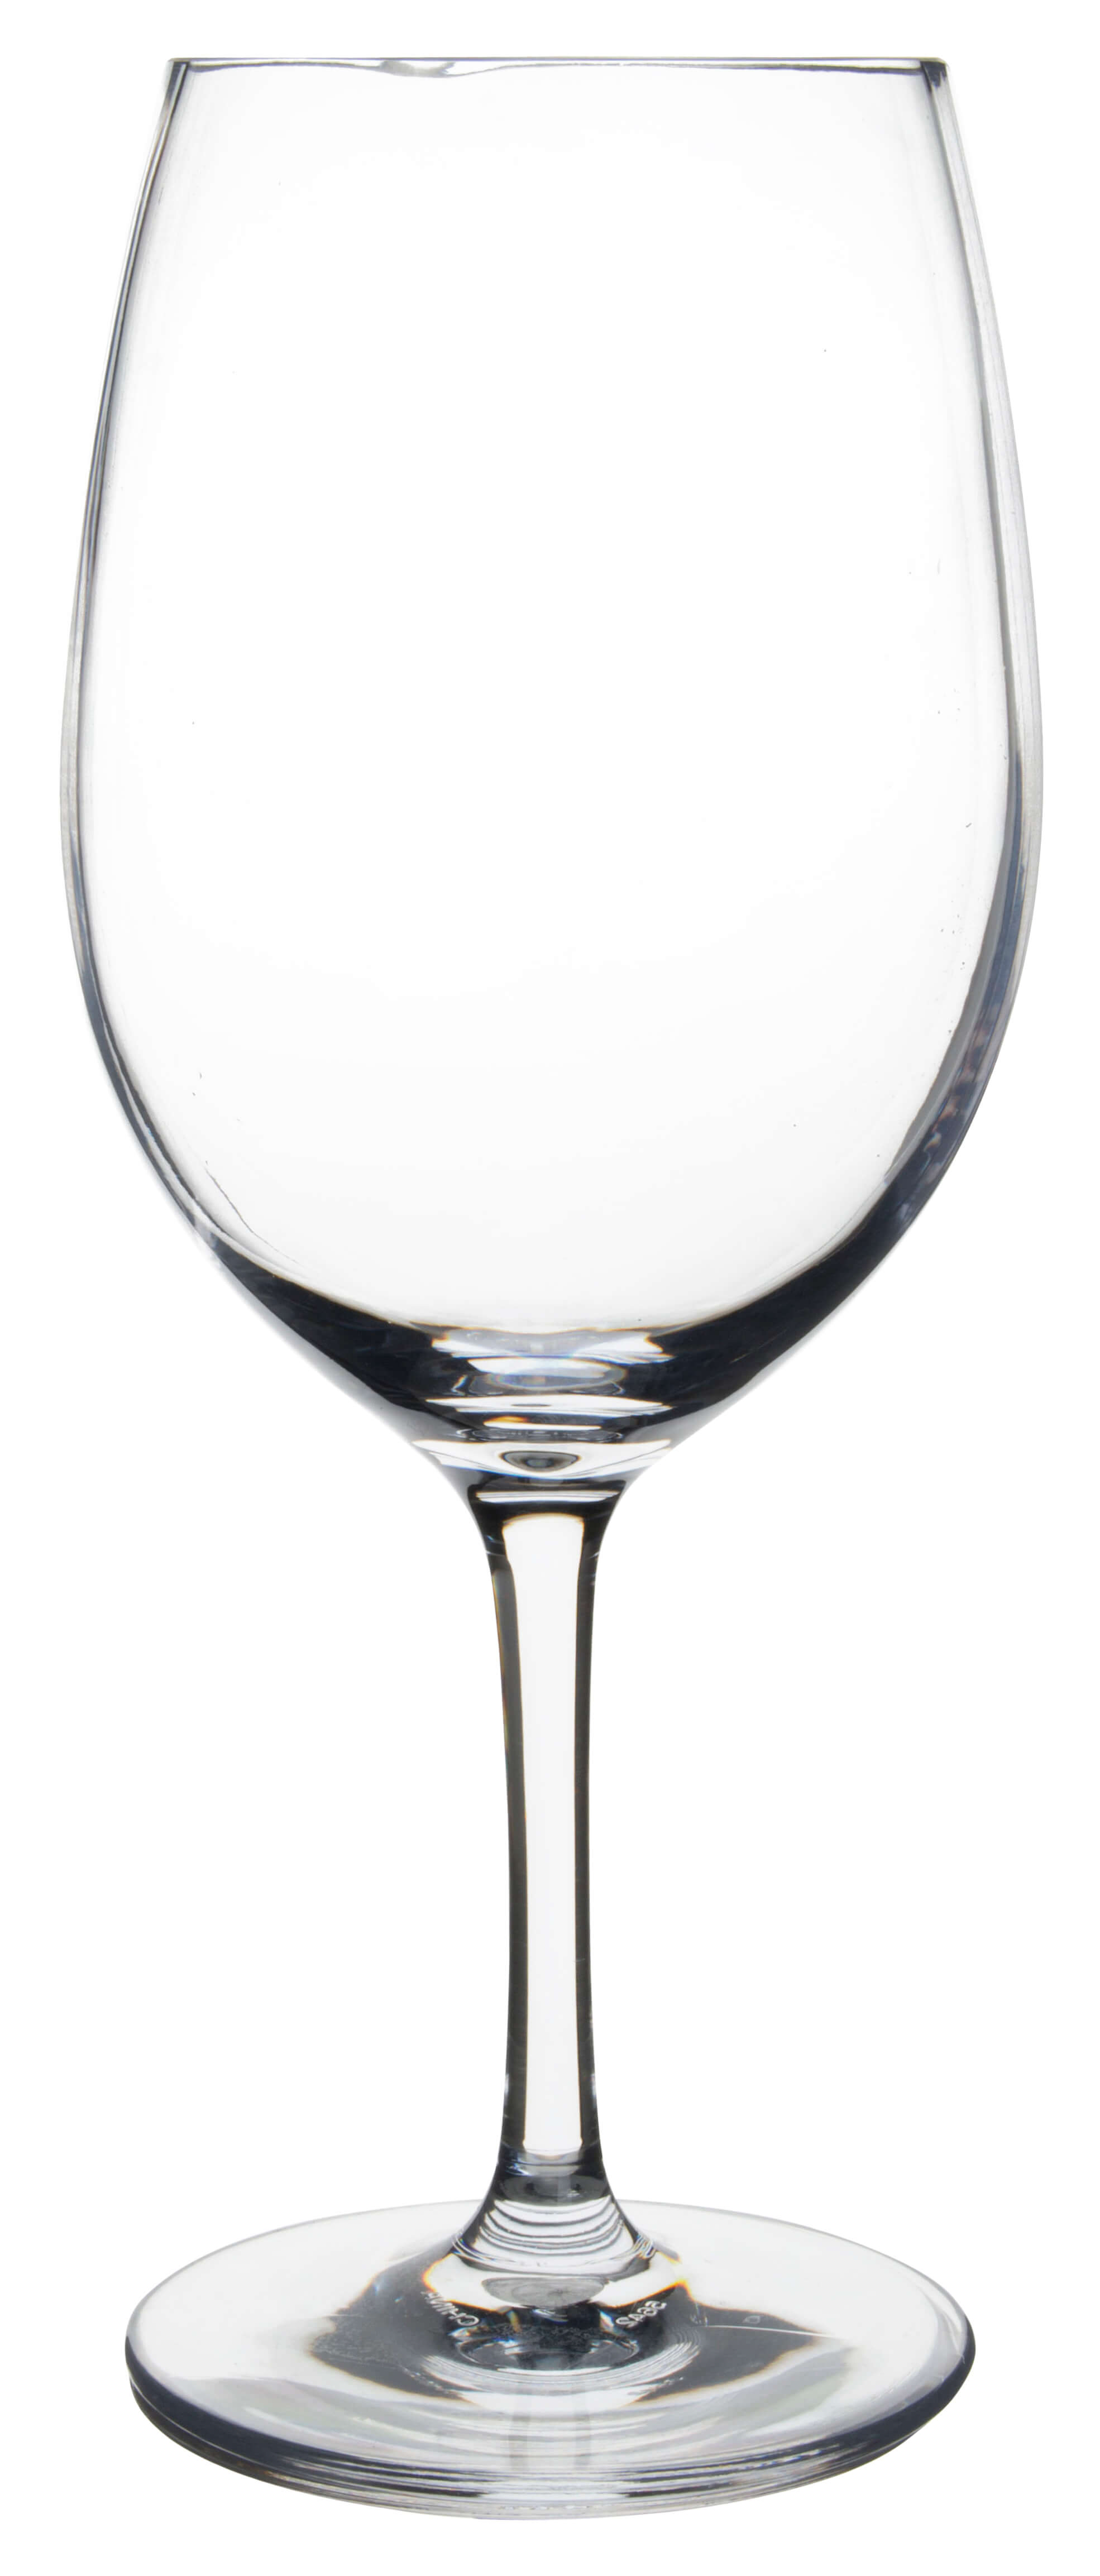 Rotweinglas Alibi Carlisle, Kunststoff - 590ml (1 Stk.)